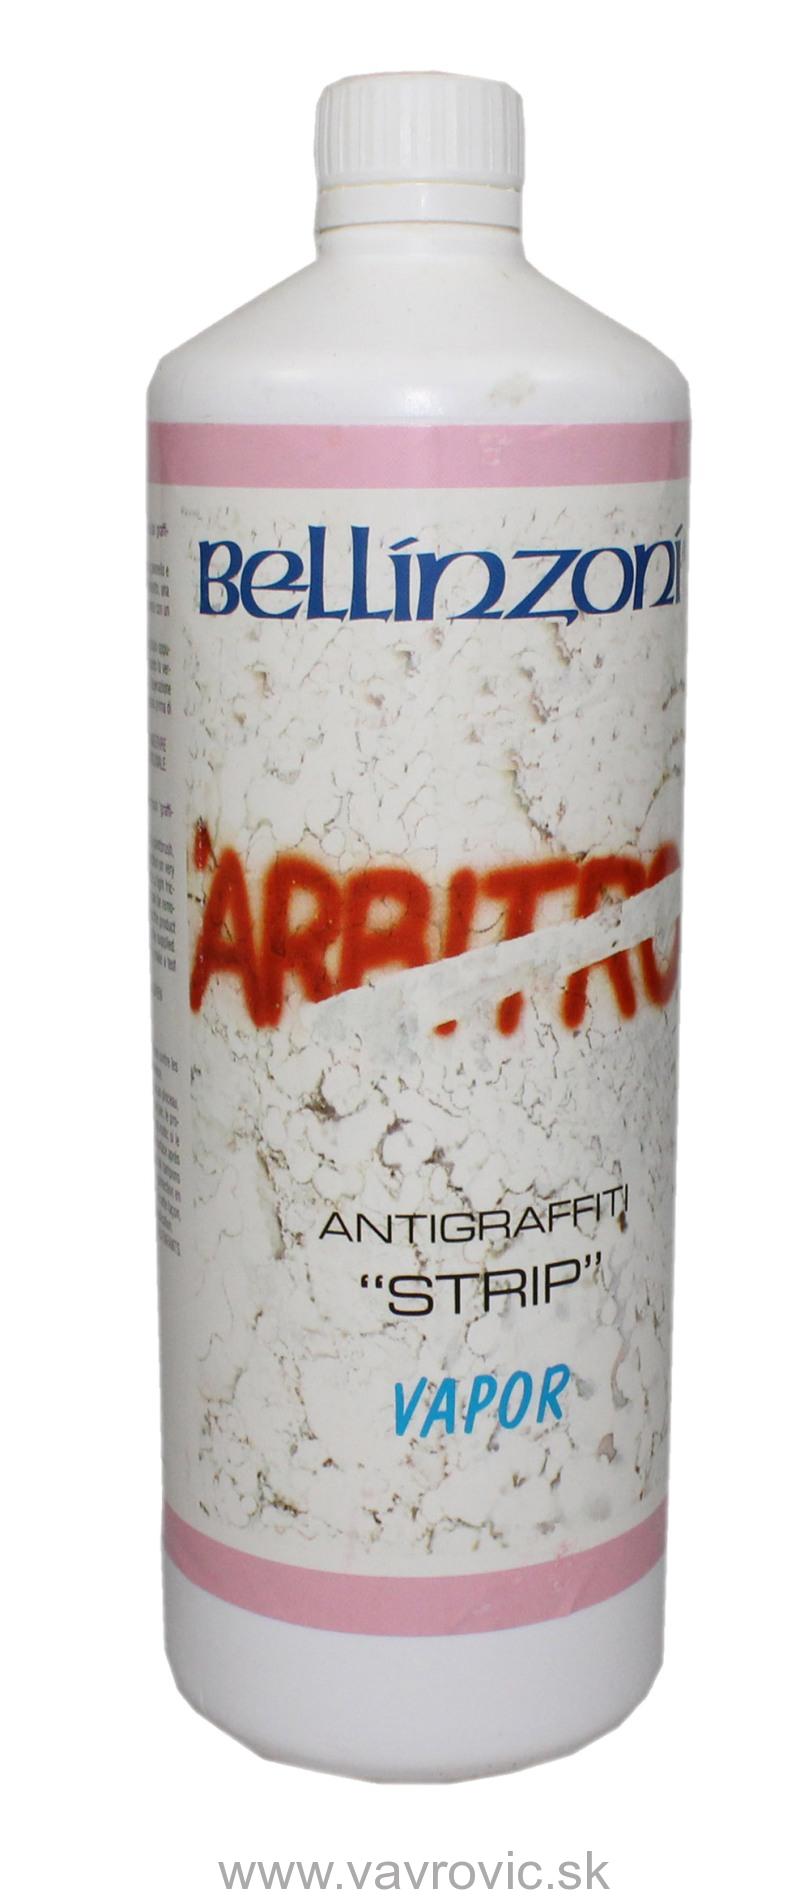 Bellinzoni - Antigraffiti Strip Vapor / 5 litrov